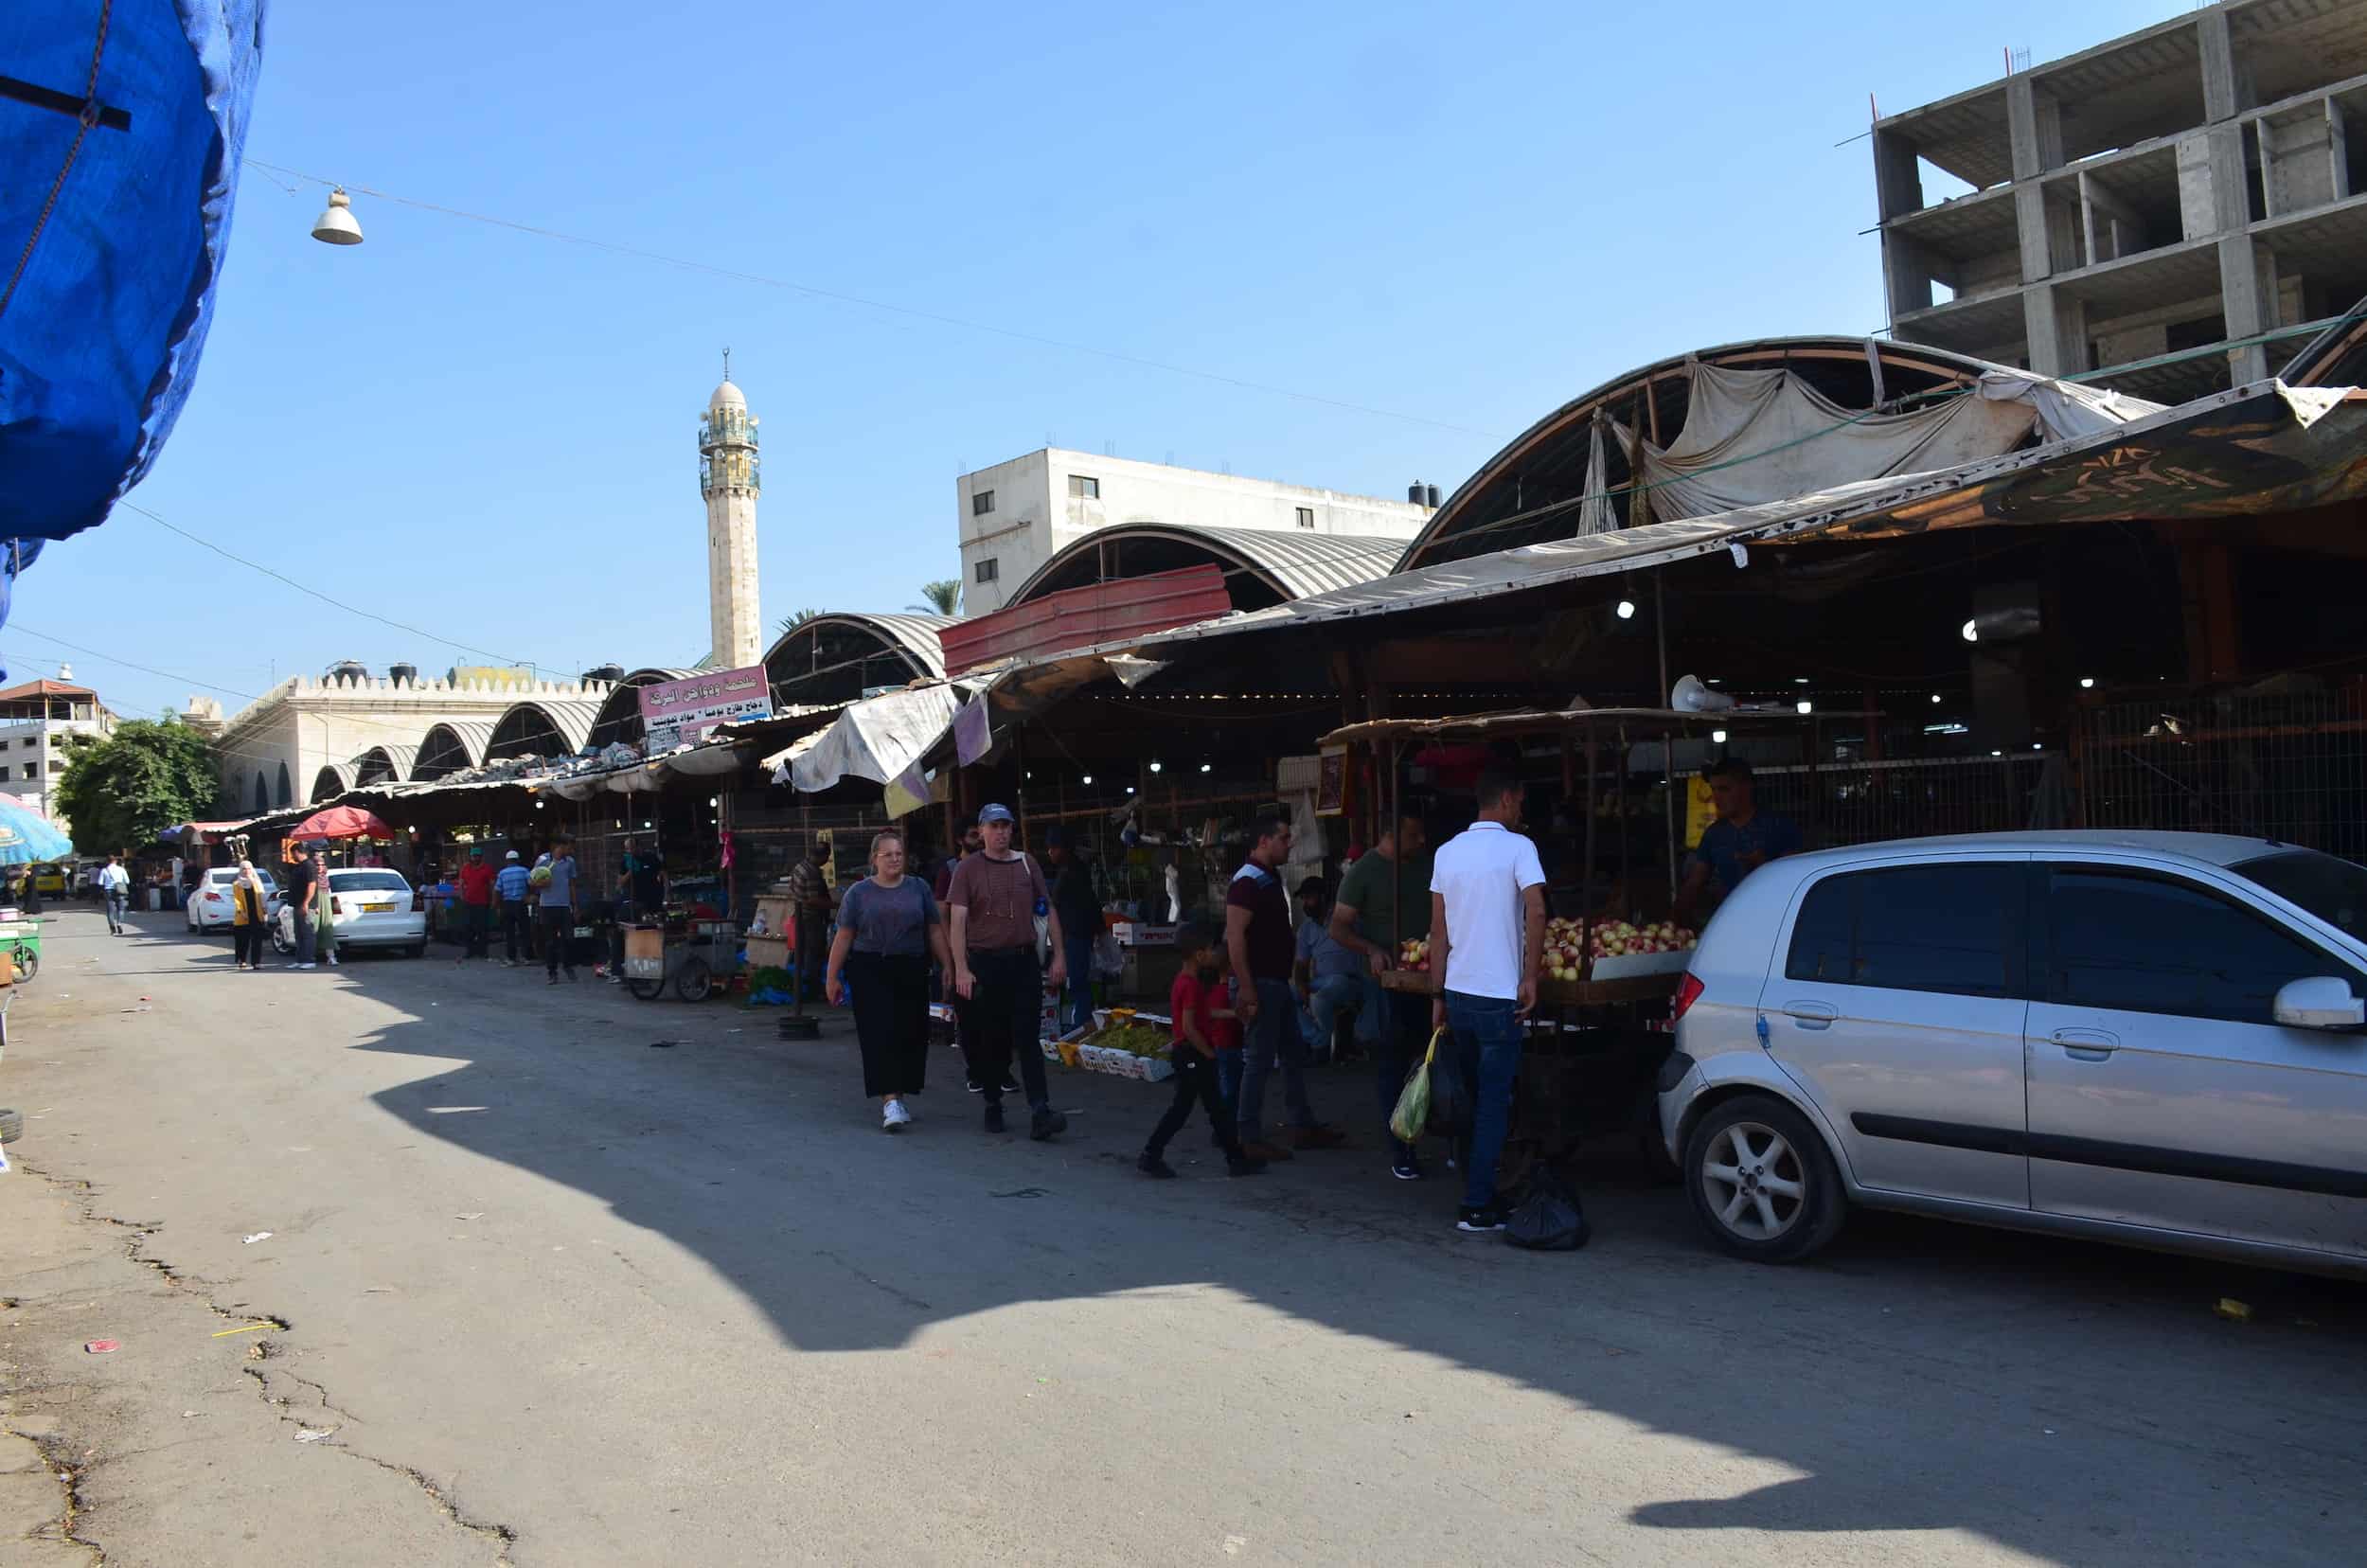 Market in Jenin, Palestine